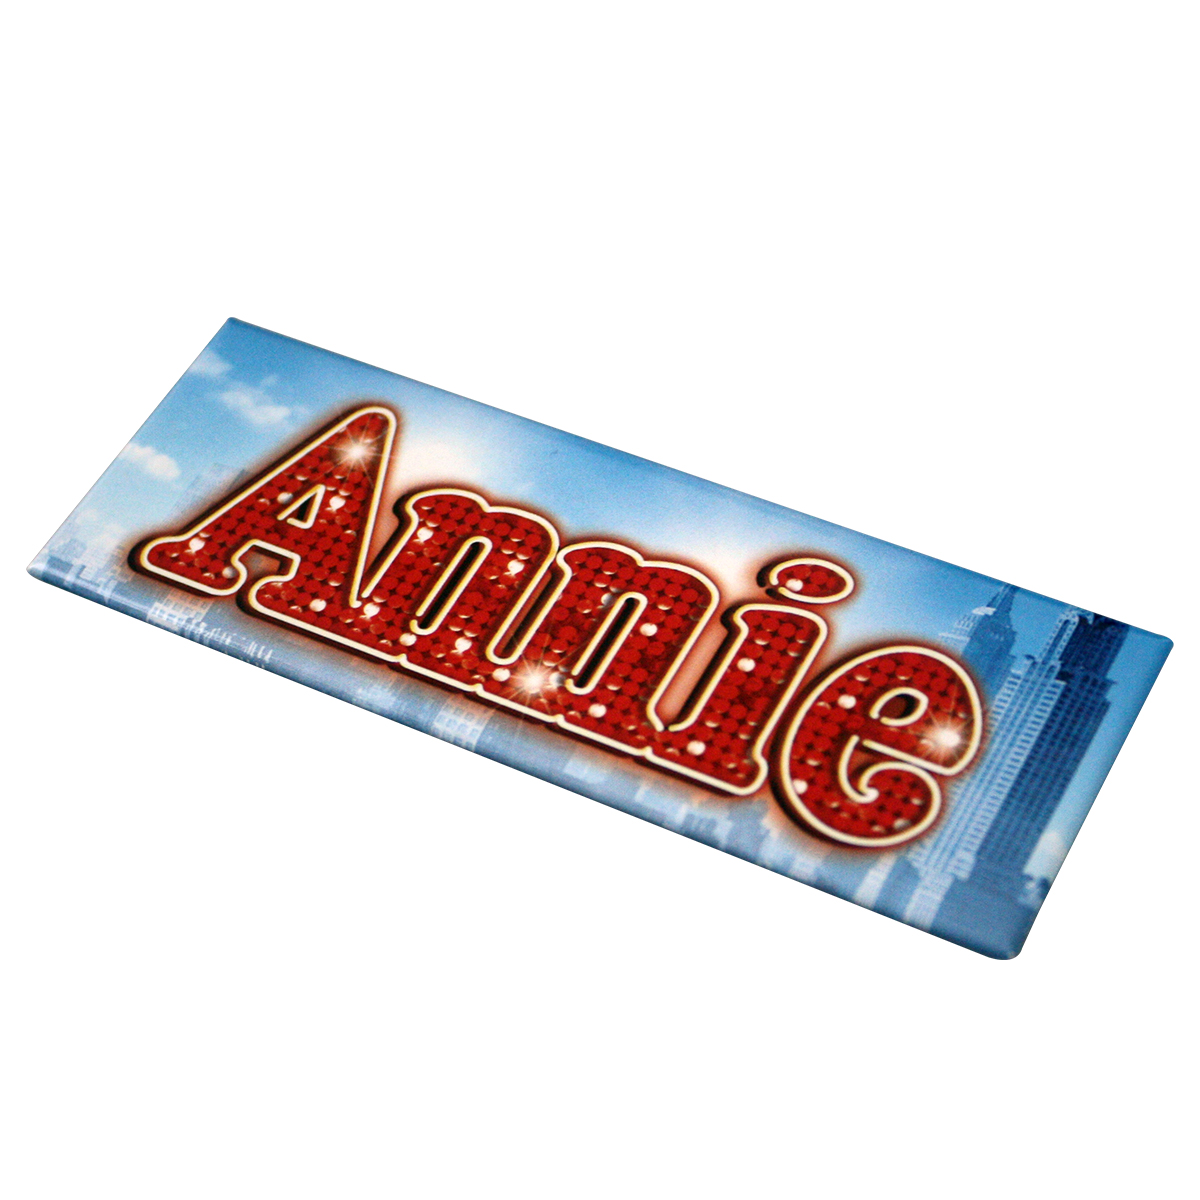 Annie The Musical Fridge Magnet.